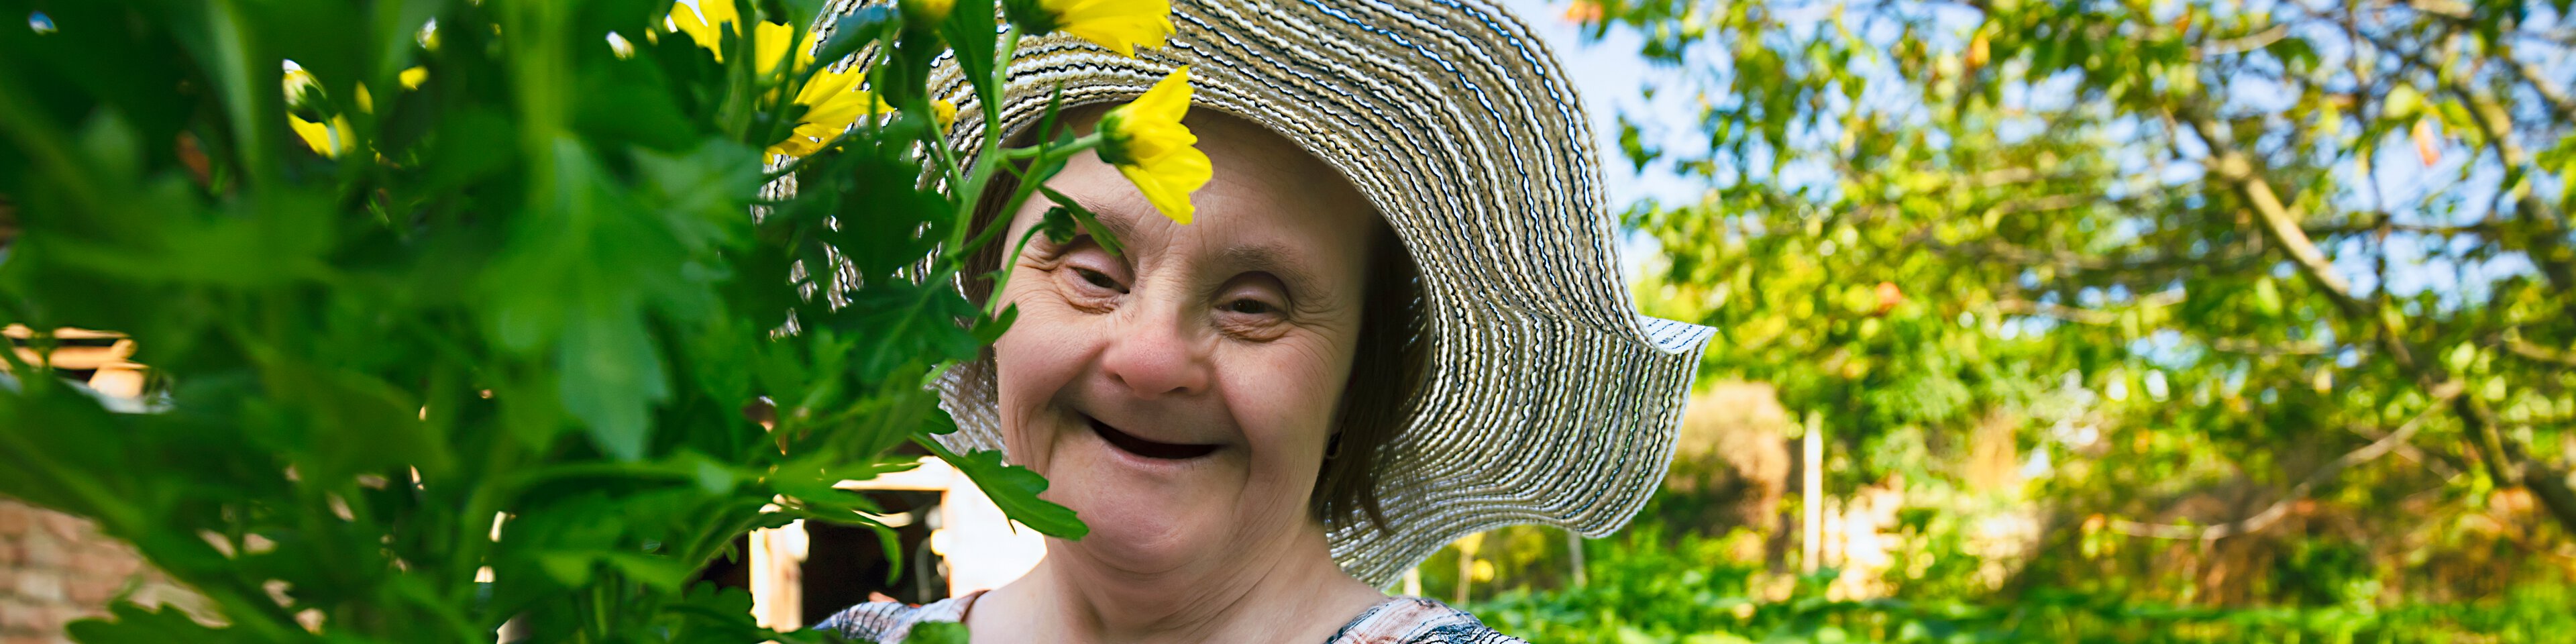 Eine ältere Frau mit Sonnenhut und Behinderung hält eine Pflanze in der Hand und lacht | © portishead1 - Getty Images